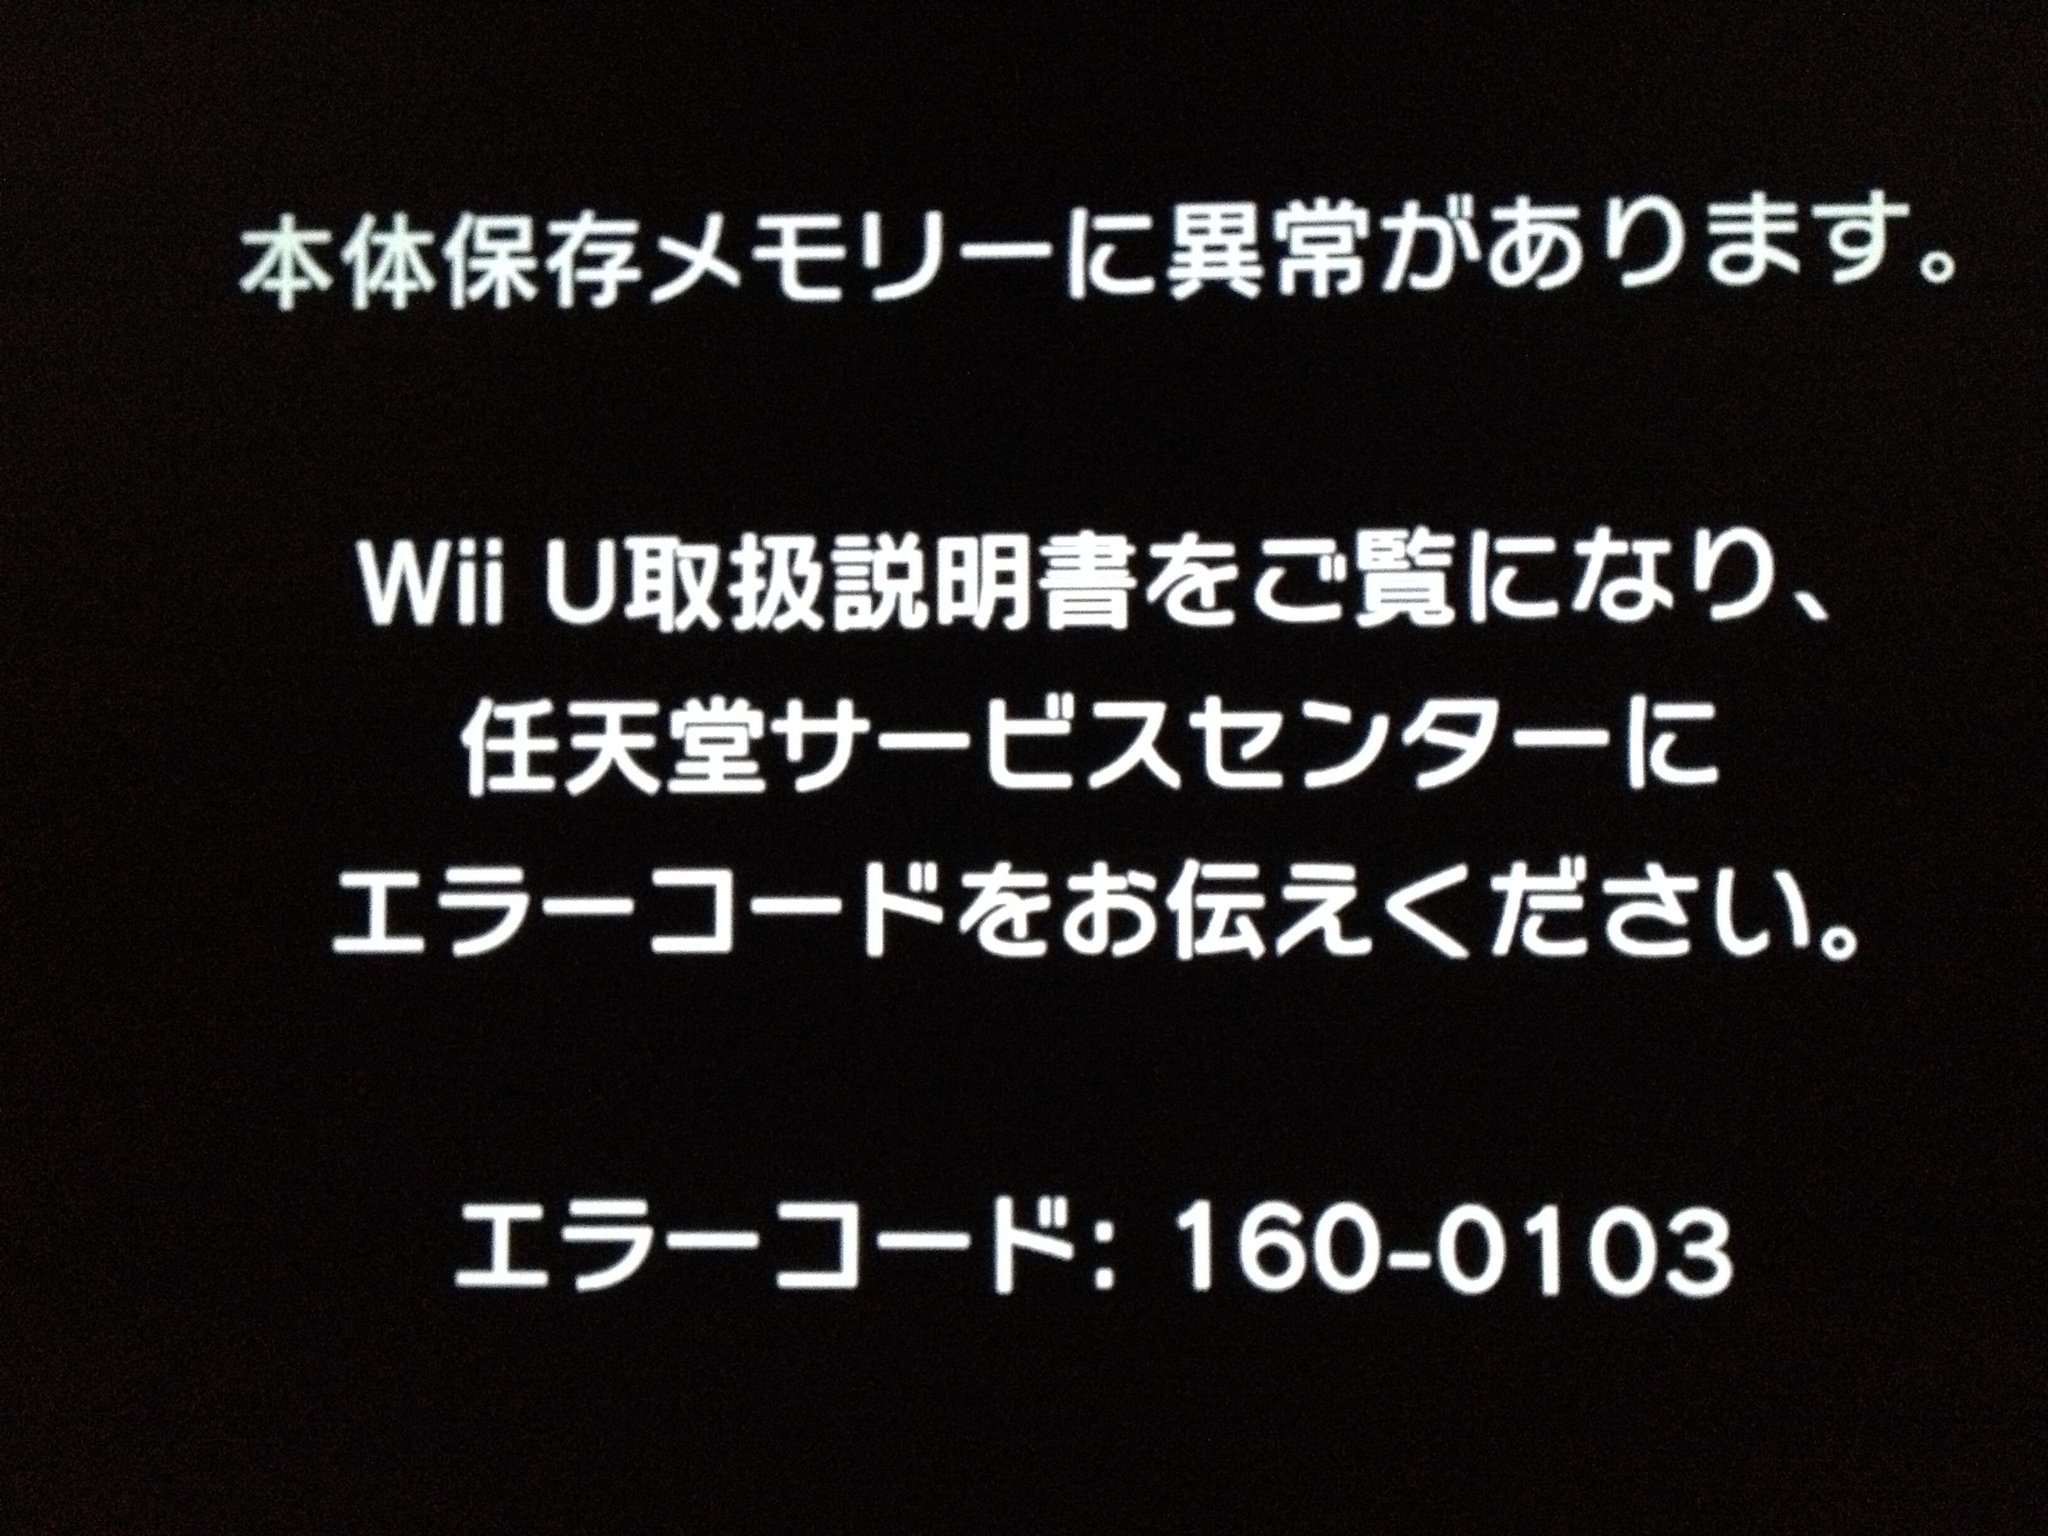 Kaworu 321 Wii U エラーコード 160 0103って何だ マリオをやろうとしただけなのに Http T Co Fxf4bioadf